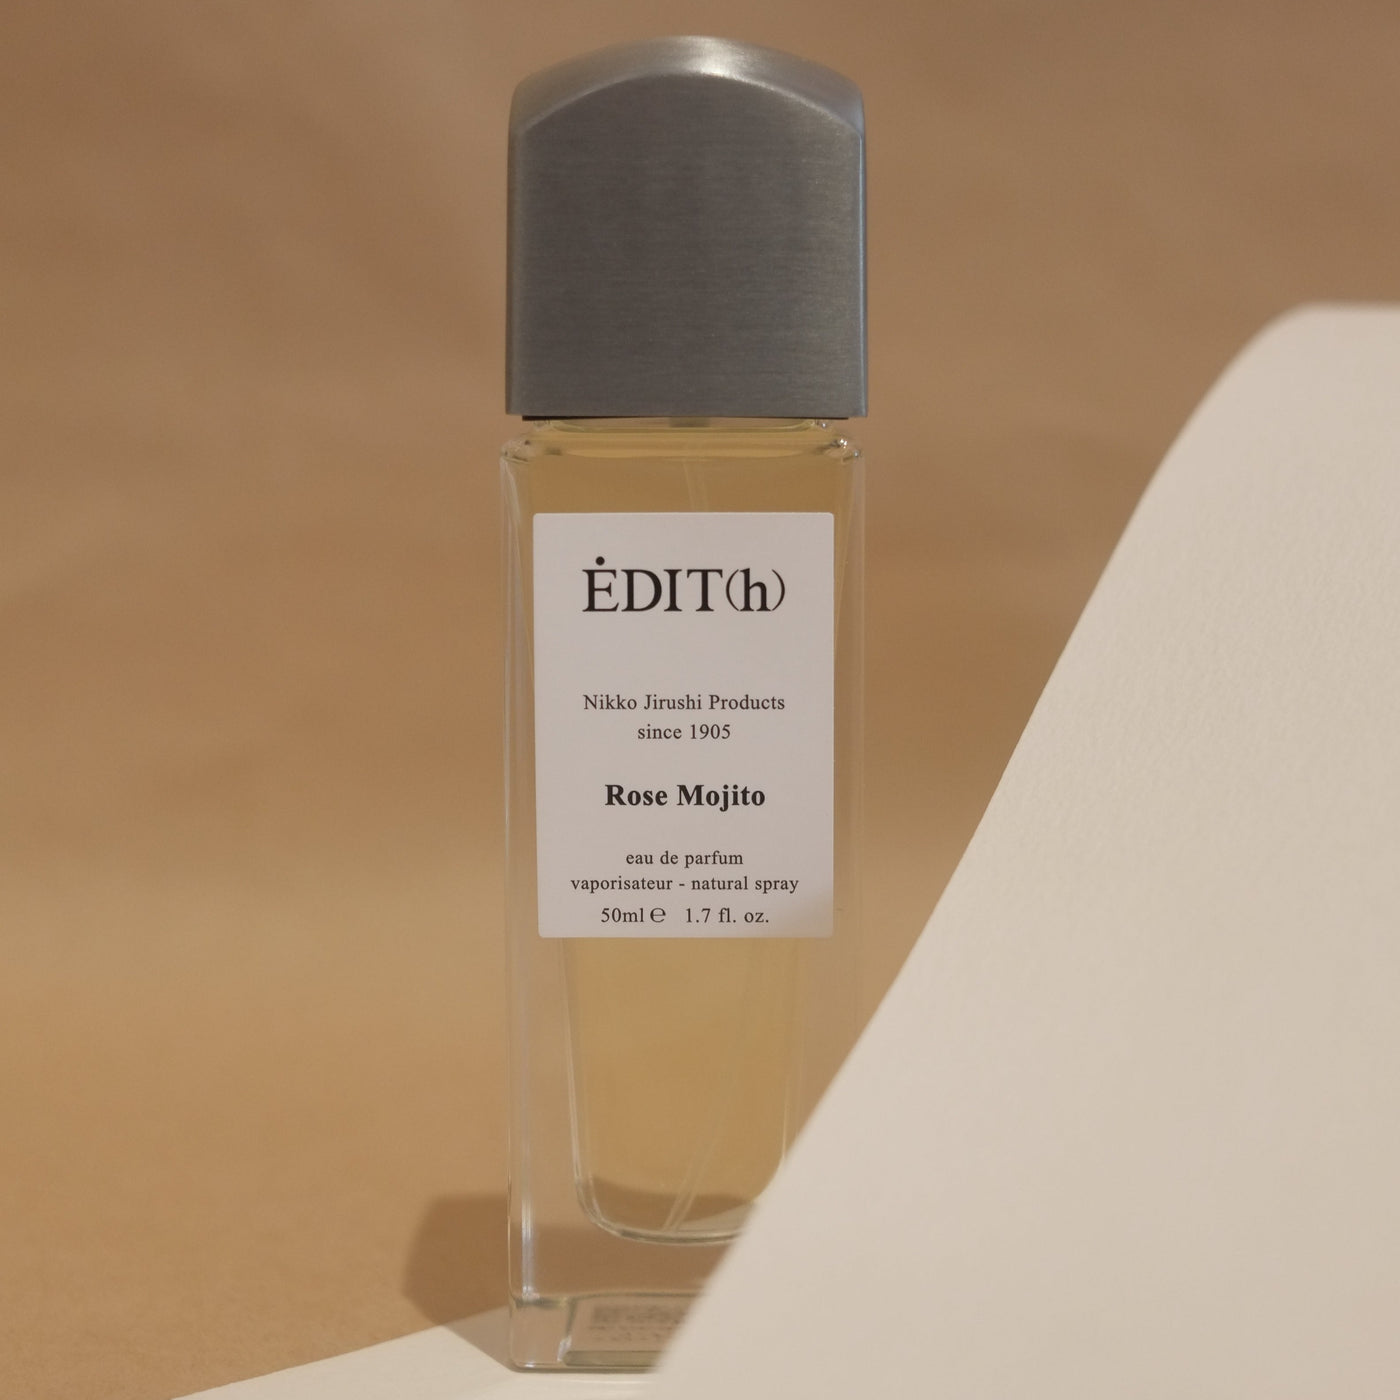 EDIT(h) ローズモヒート eau de parfum - 香水(ユニセックス)